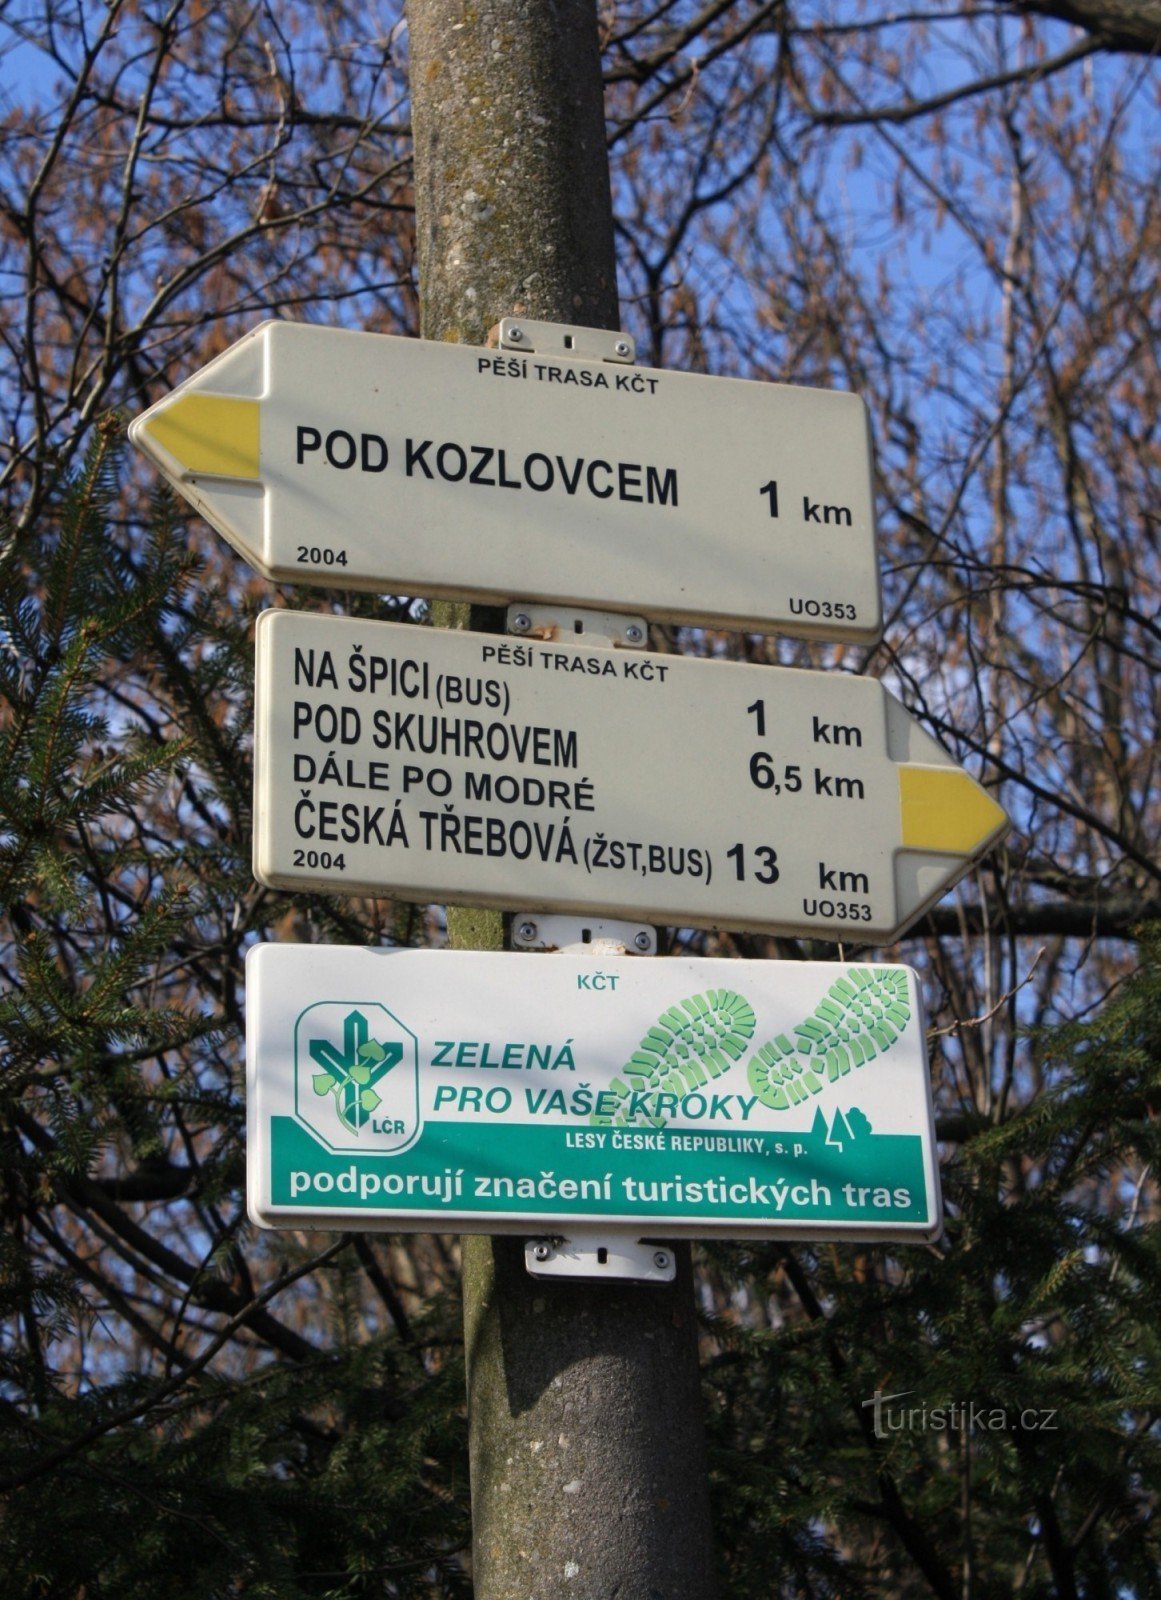 Răscruce turistică Dlouhá Třebová lângă gara